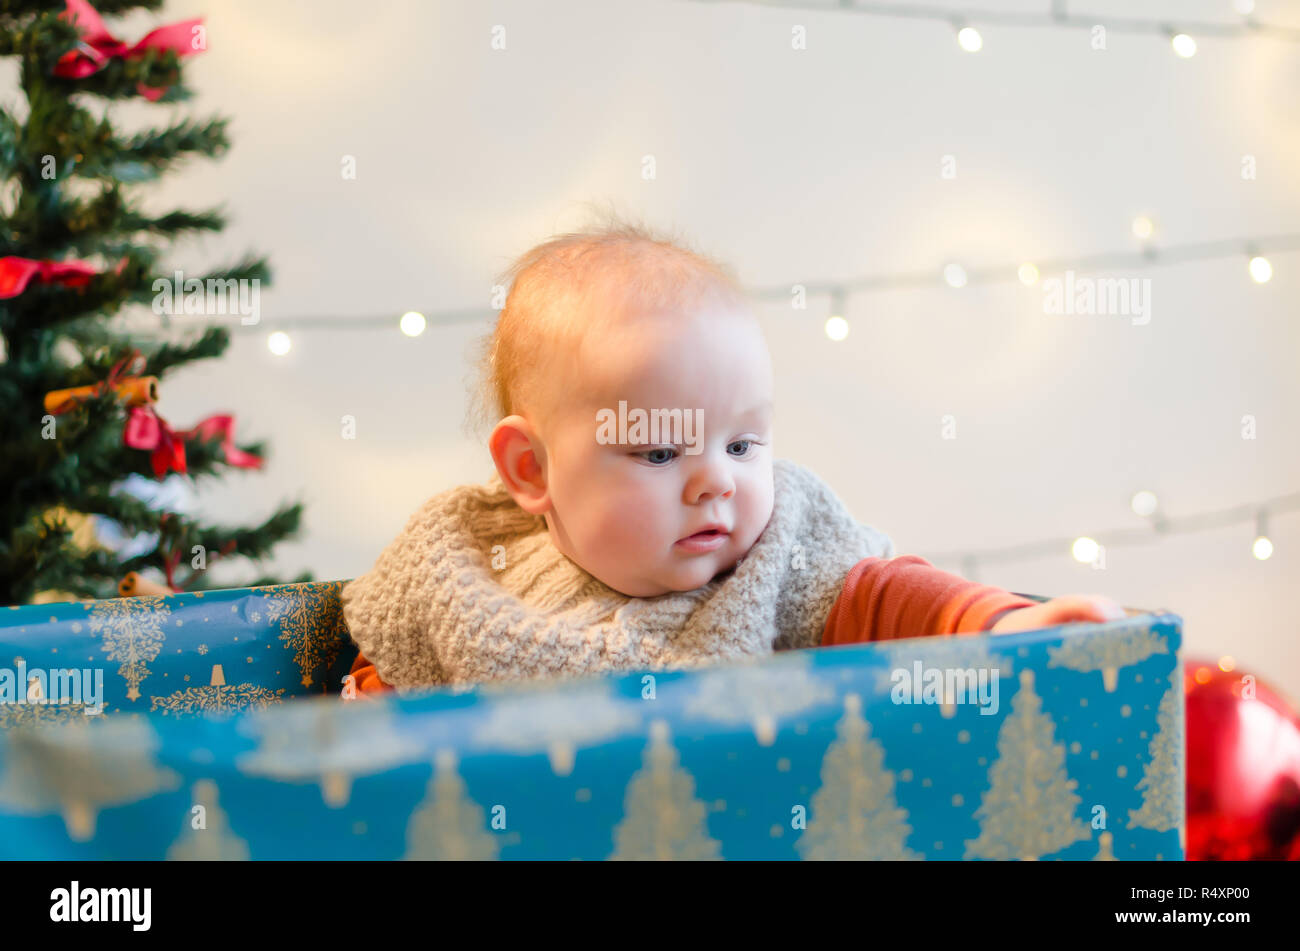 Feliz Navidad Baby Boy en el presente cuadro alrededor del árbol de Navidad y adornos Foto de stock